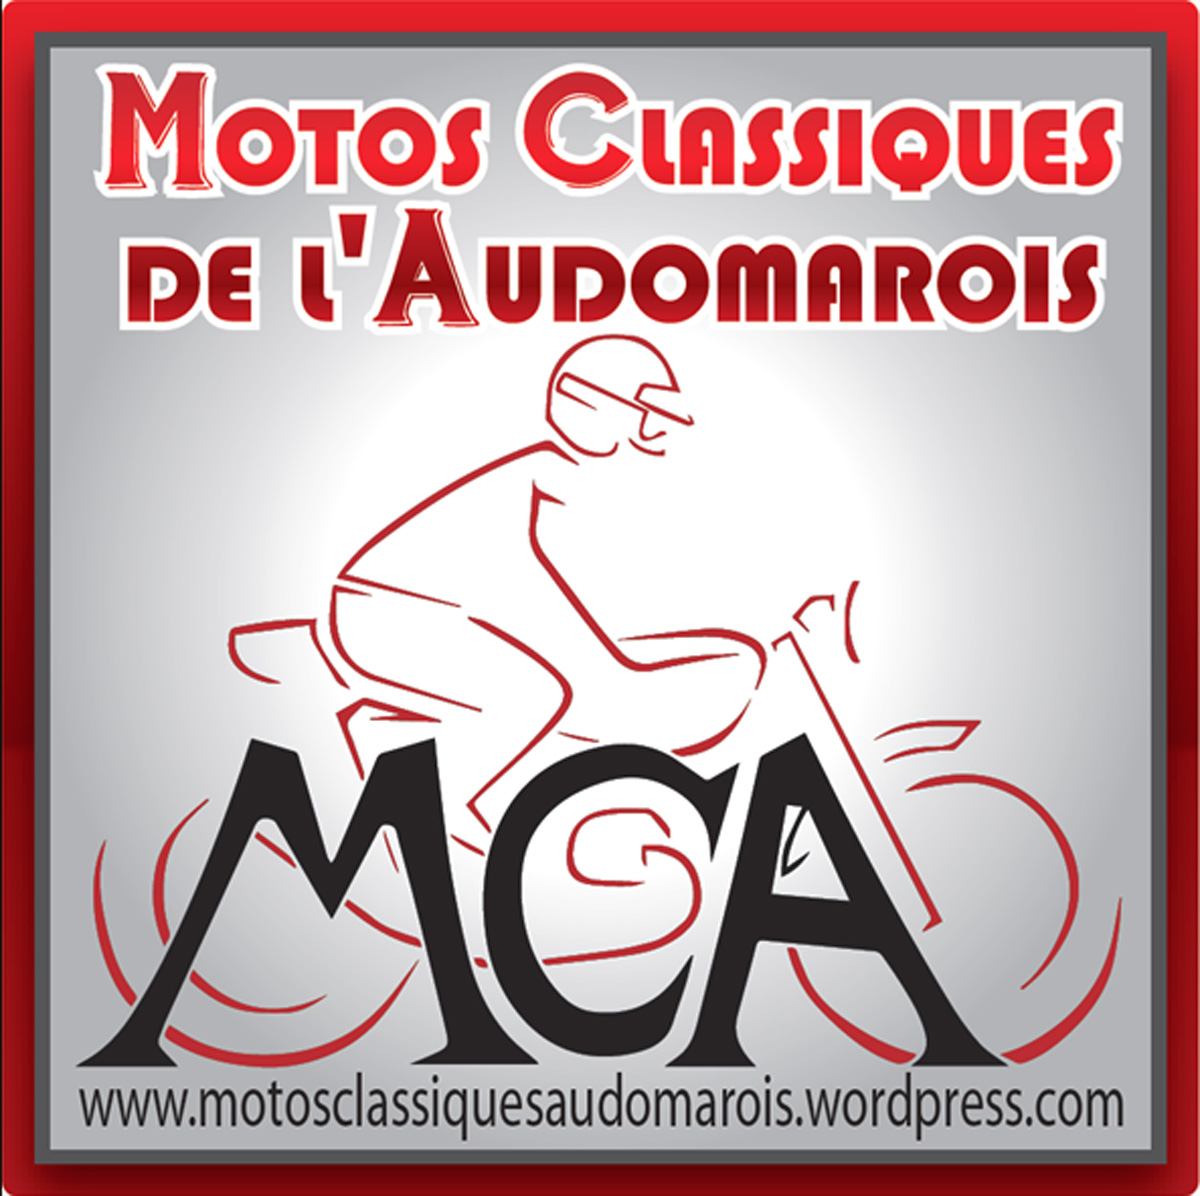 MOTO CLUB AUDOMAROIS